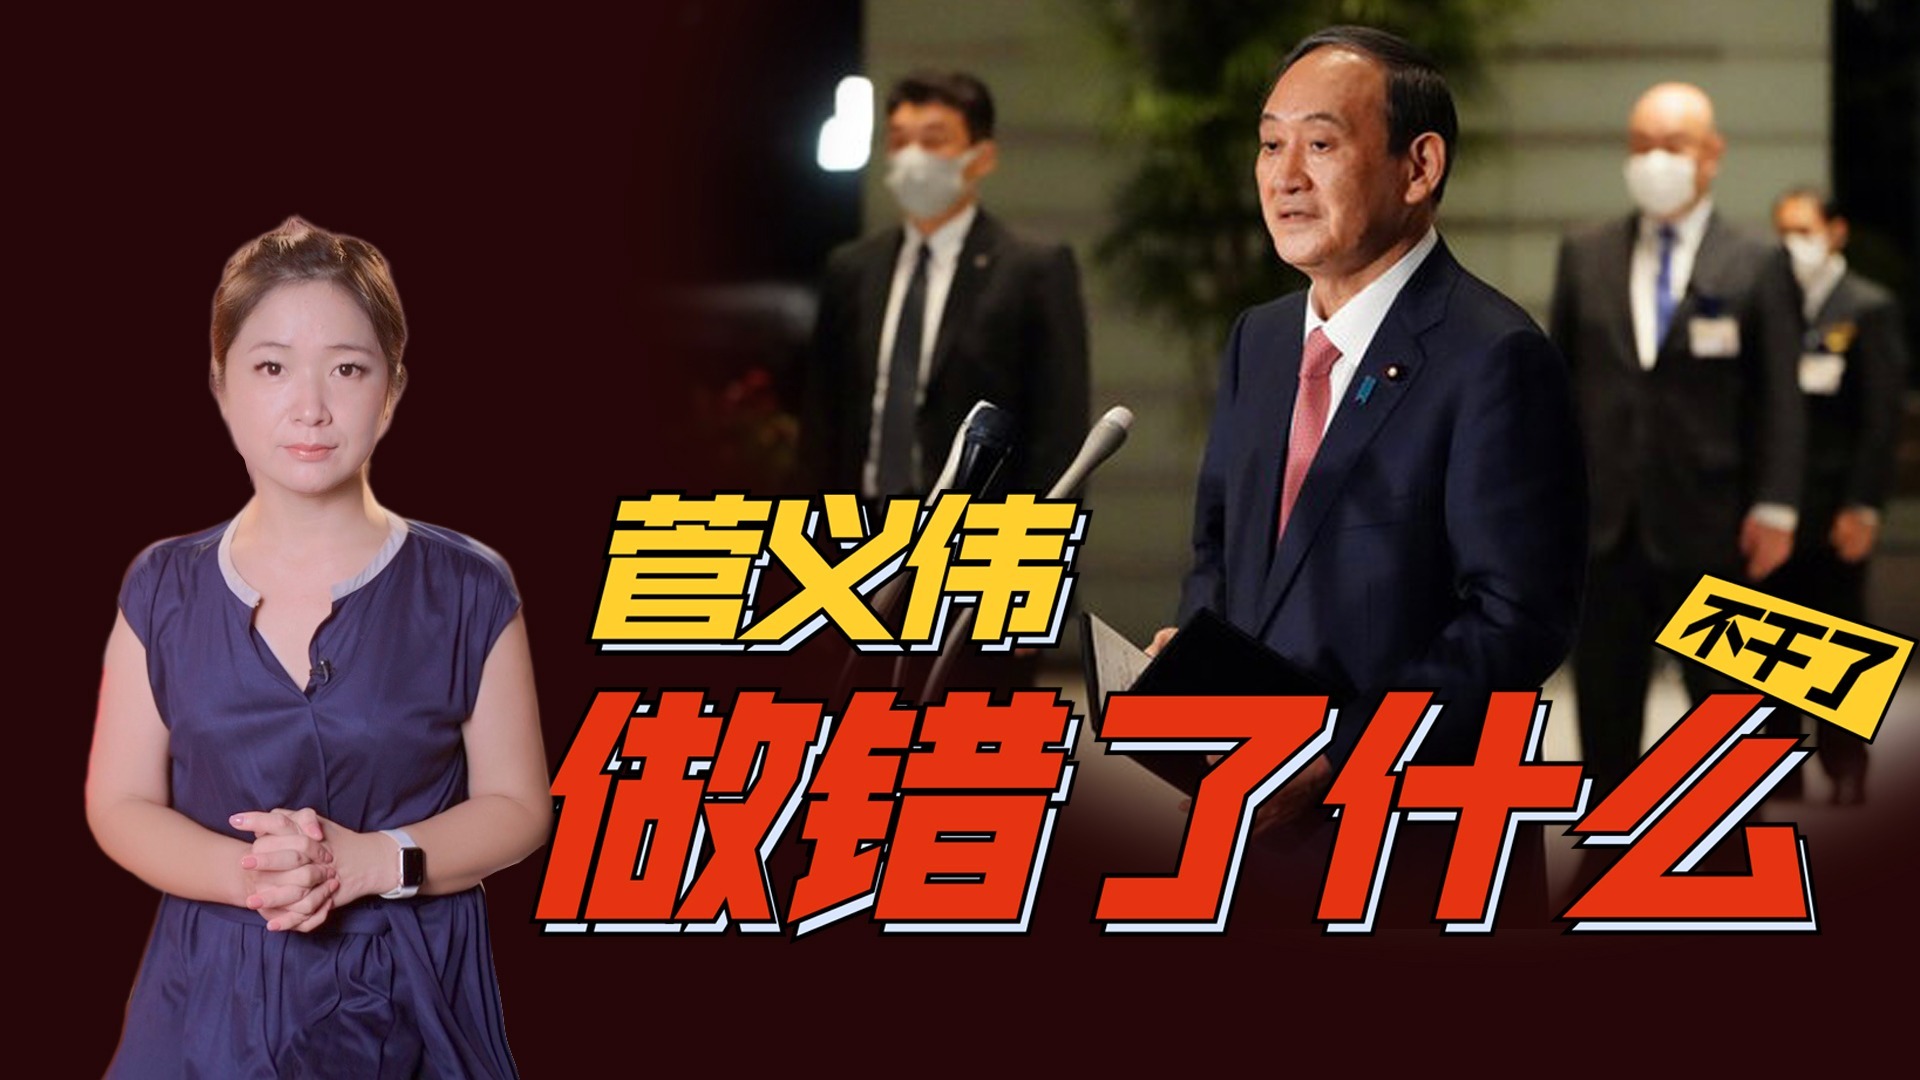 菅义伟辞职后下一任首相是谁？日本民众说出了这个名字…|李淼的日本观察